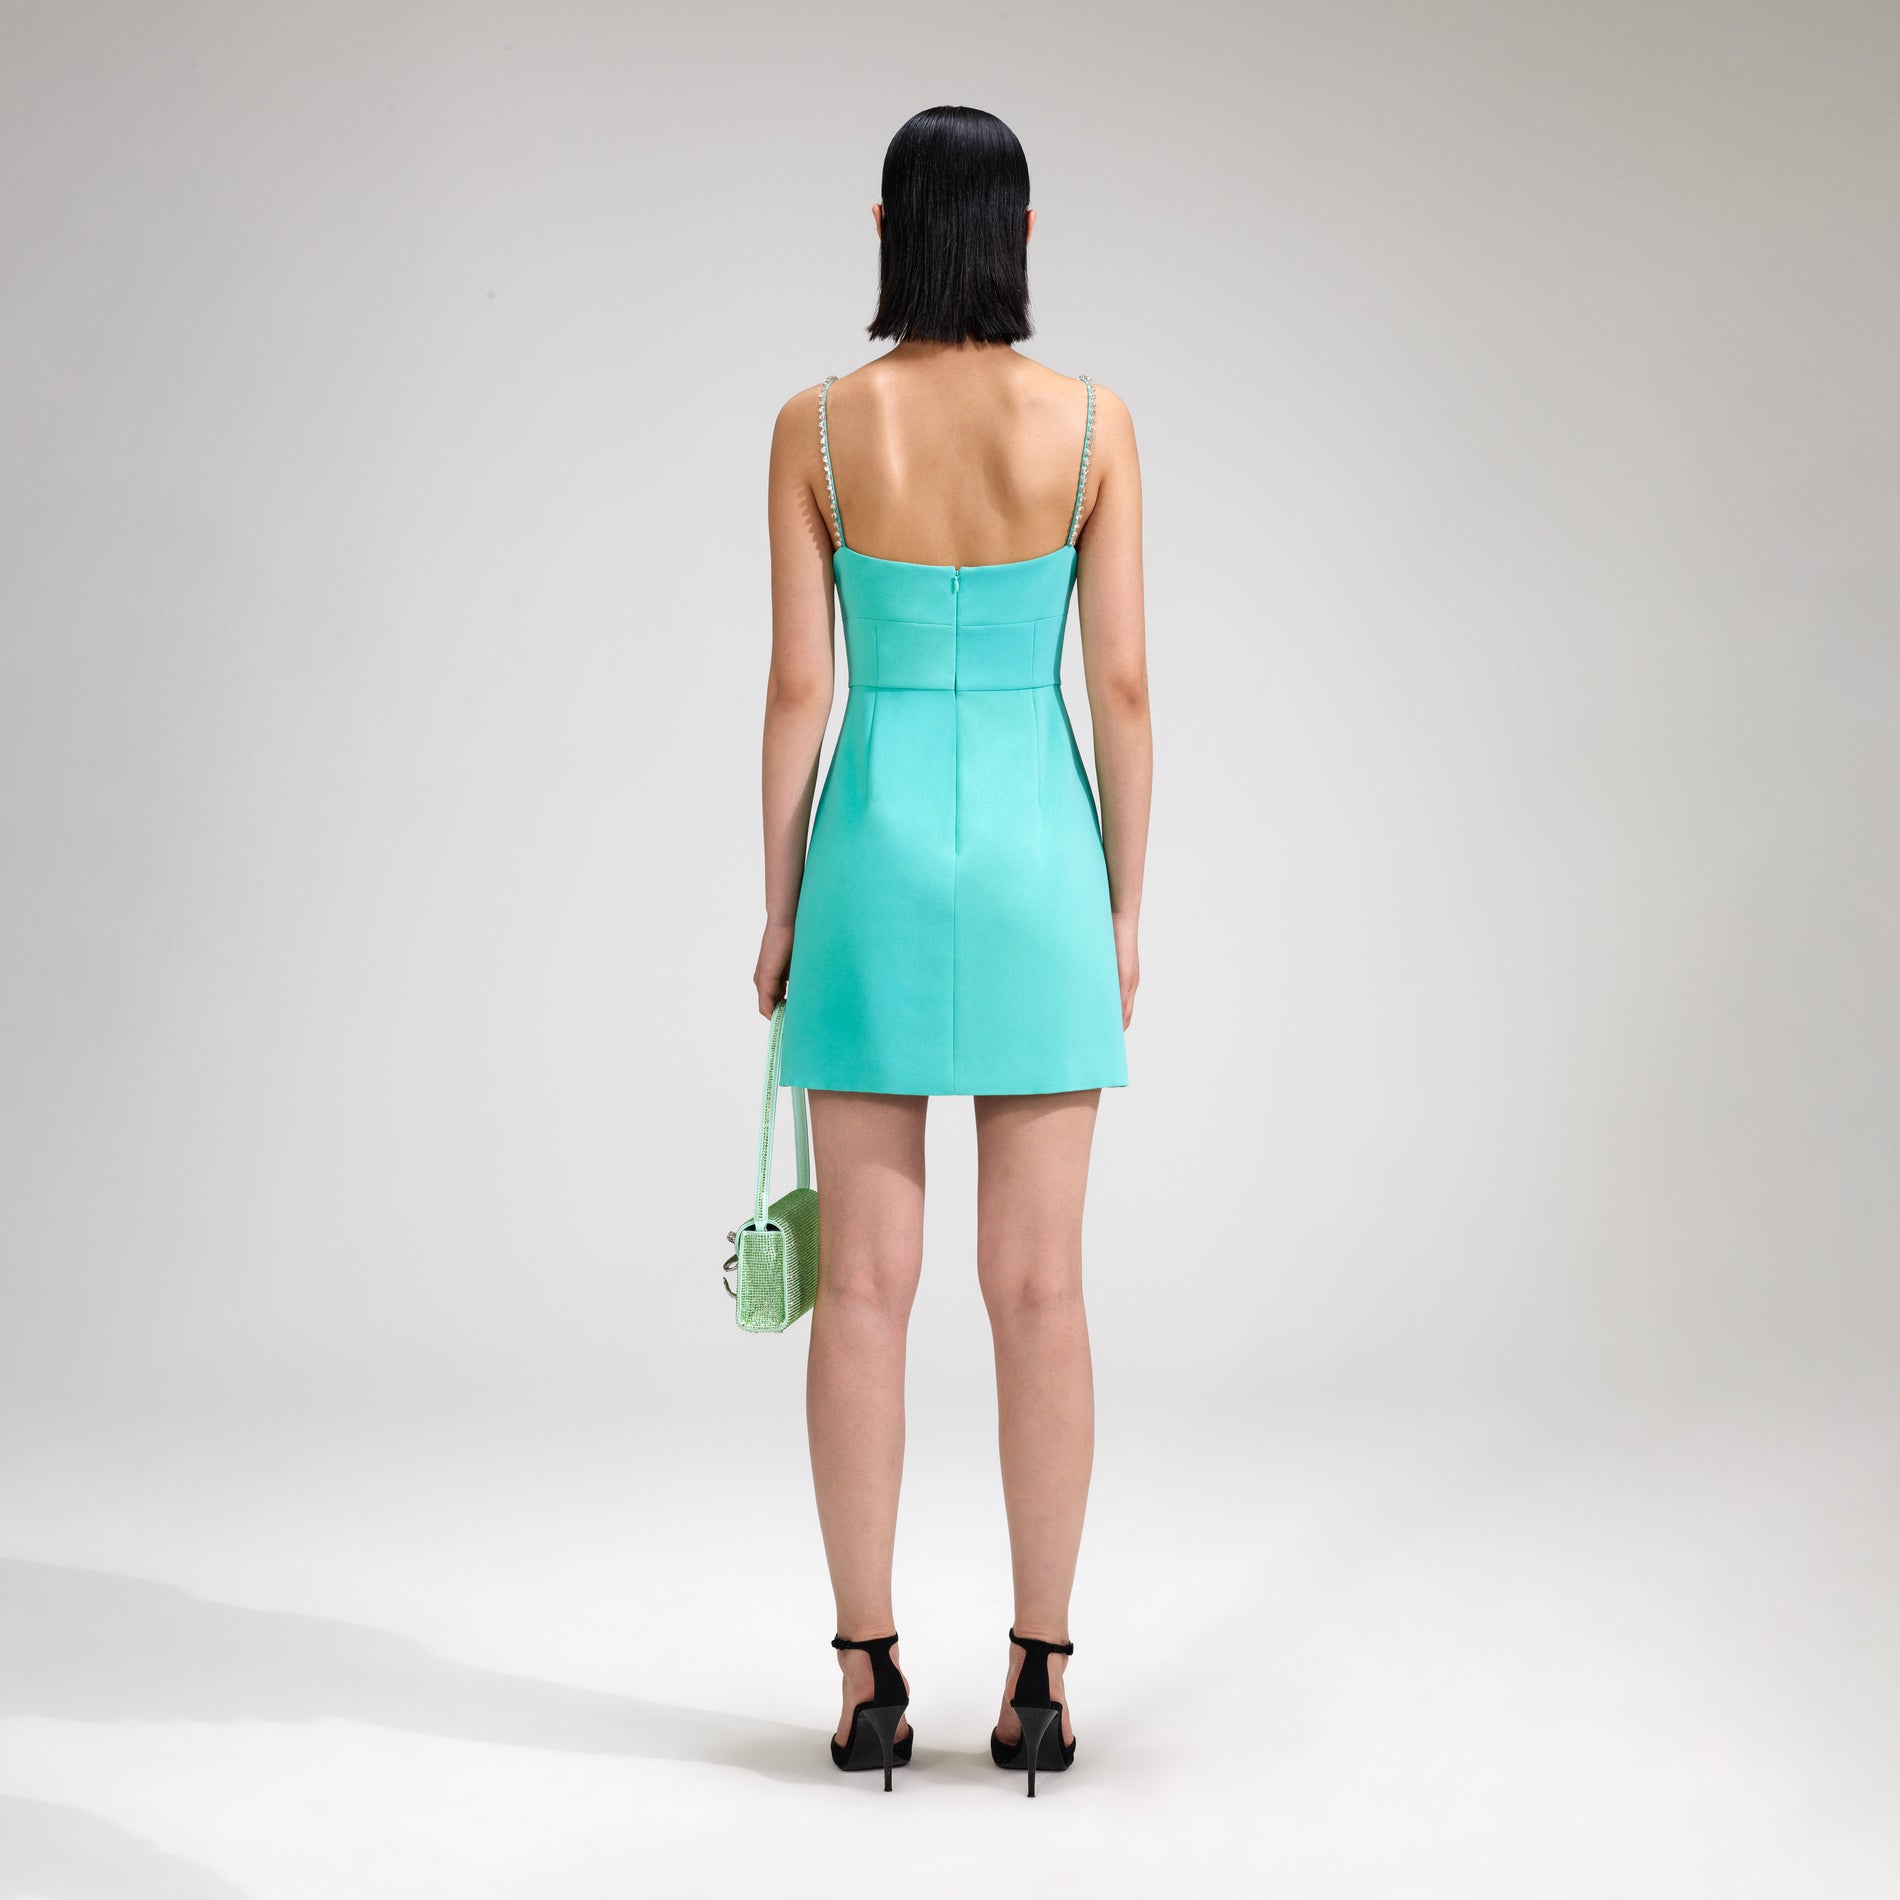 A woman wearing the Aqua Crepe Mini Dress